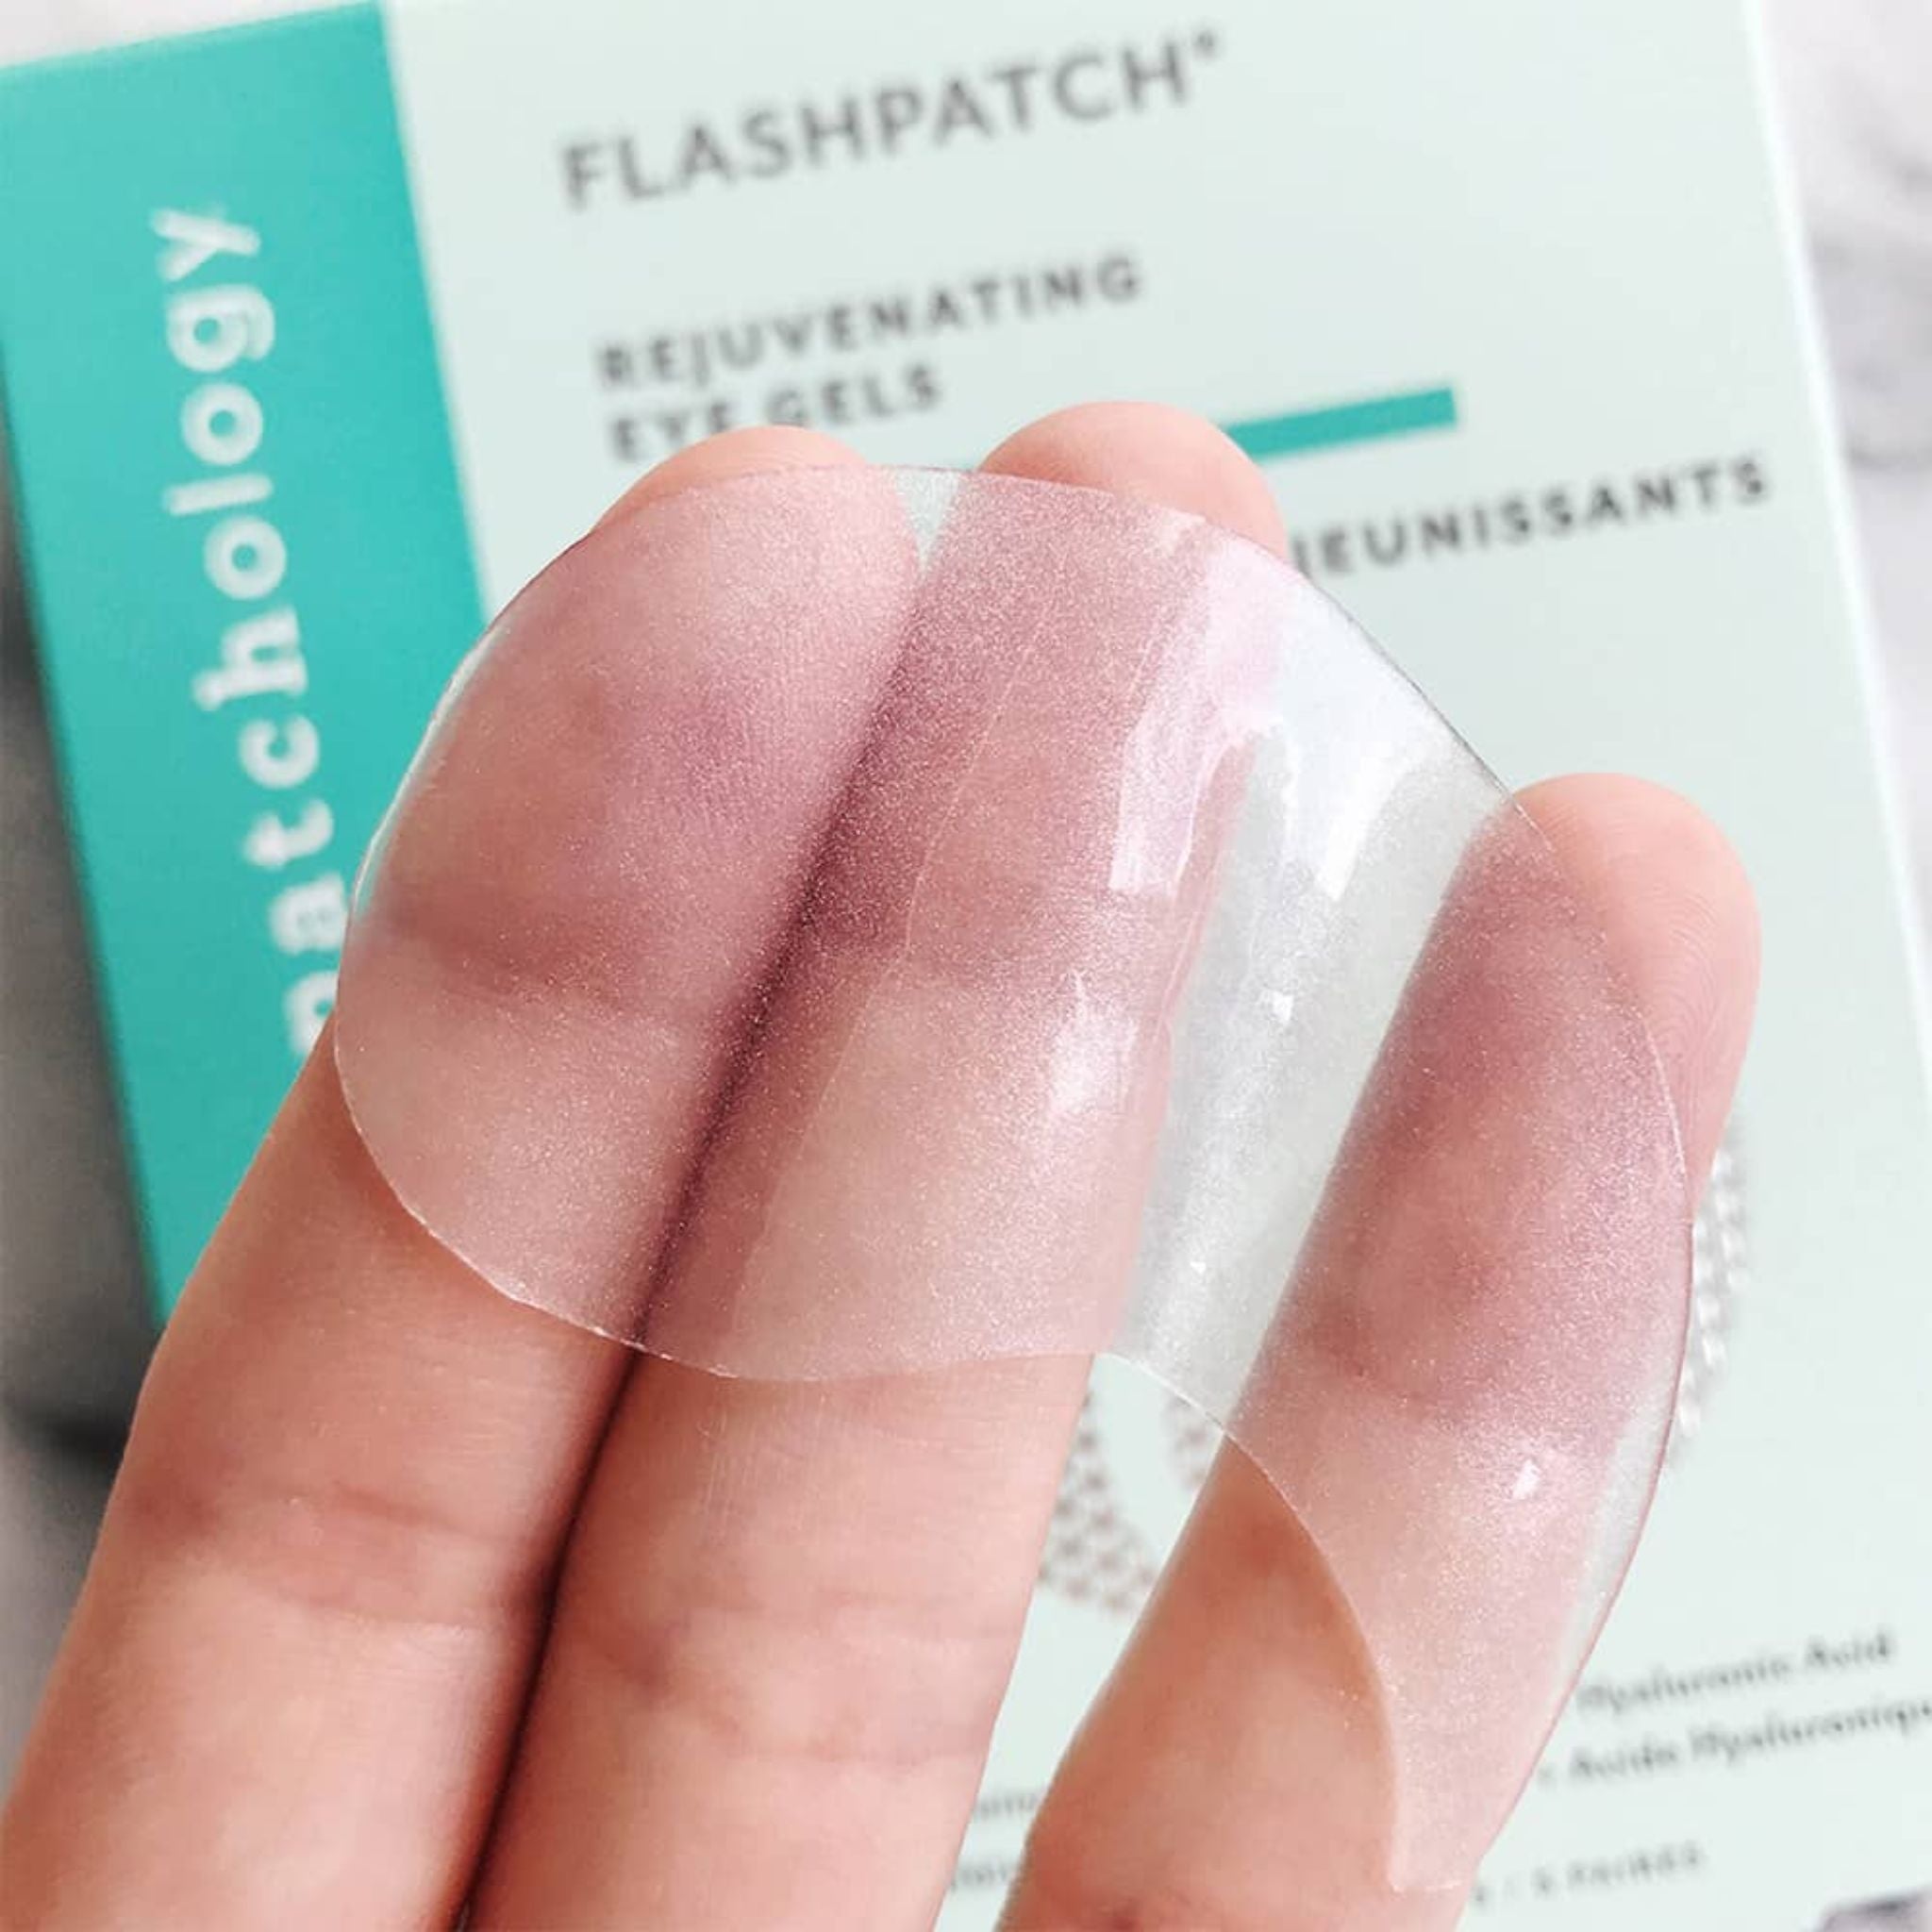 Patchology - FlashPatch® Rejuvenating Eye Gels